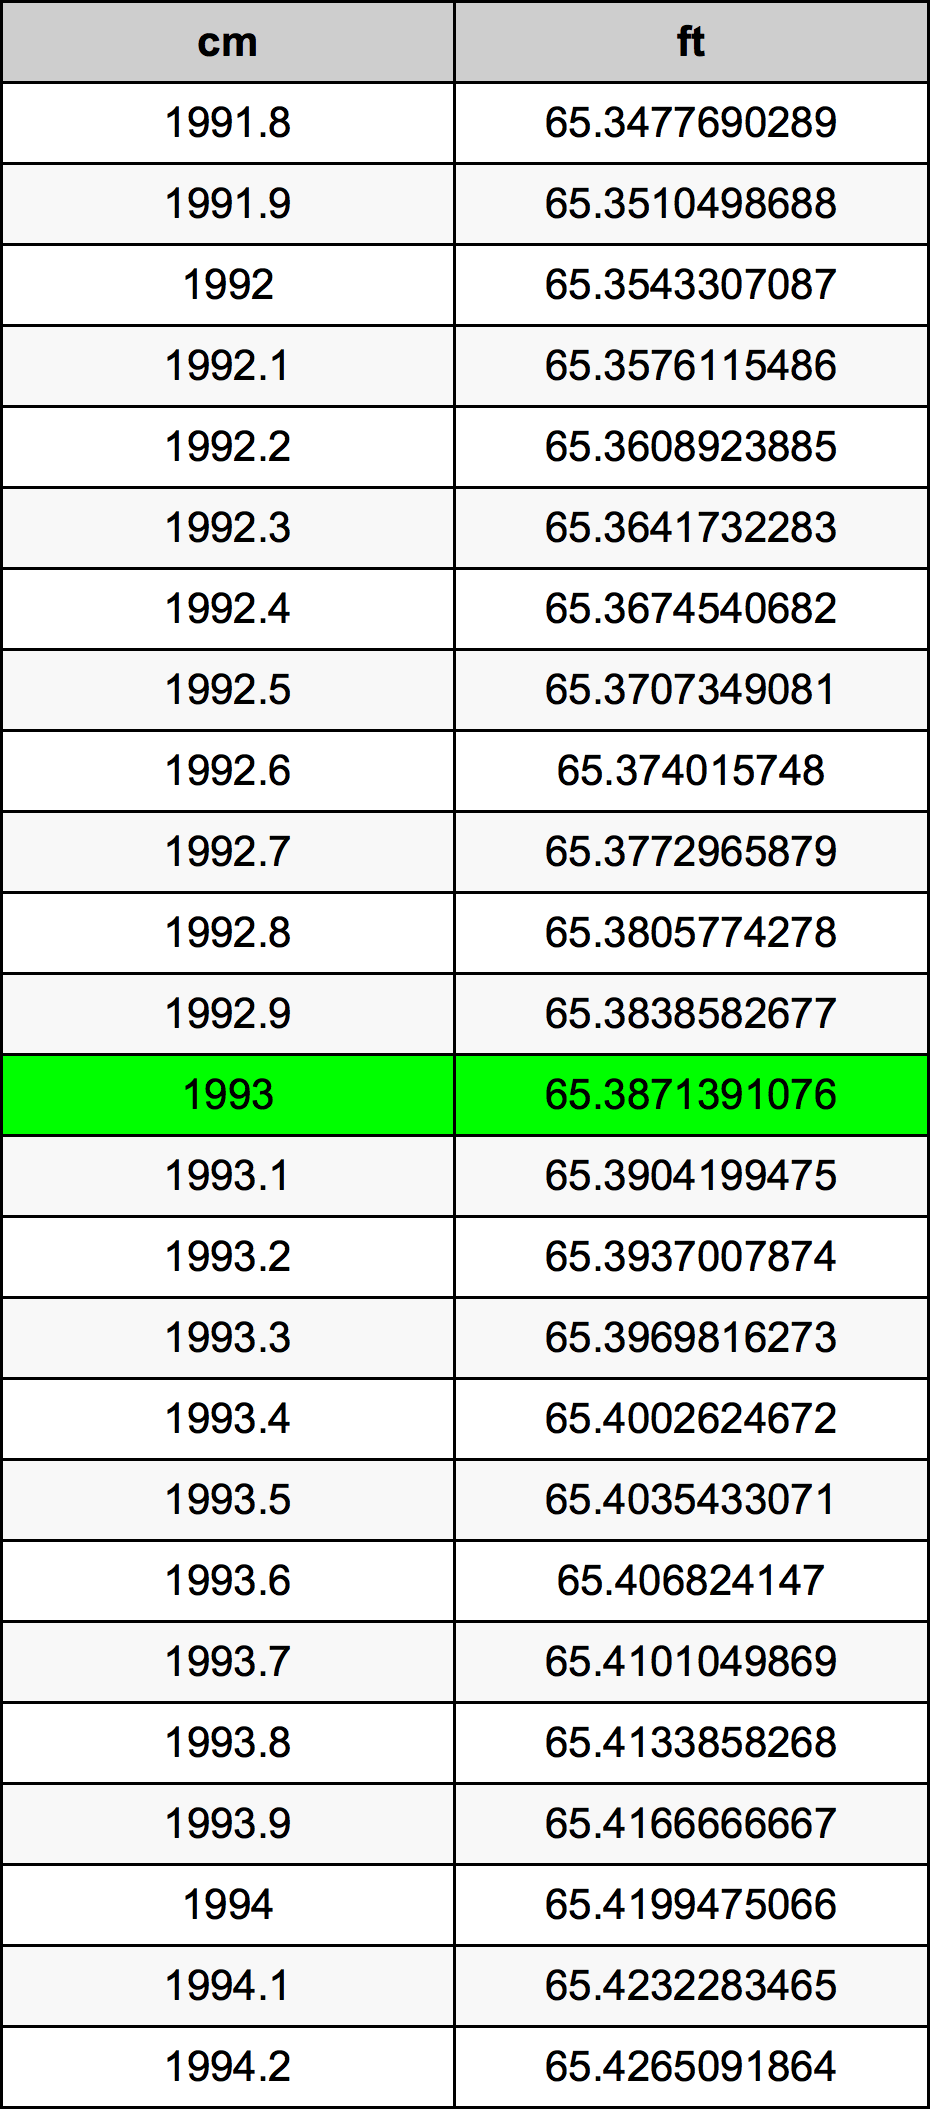 1993 Centimetru tabelul de conversie